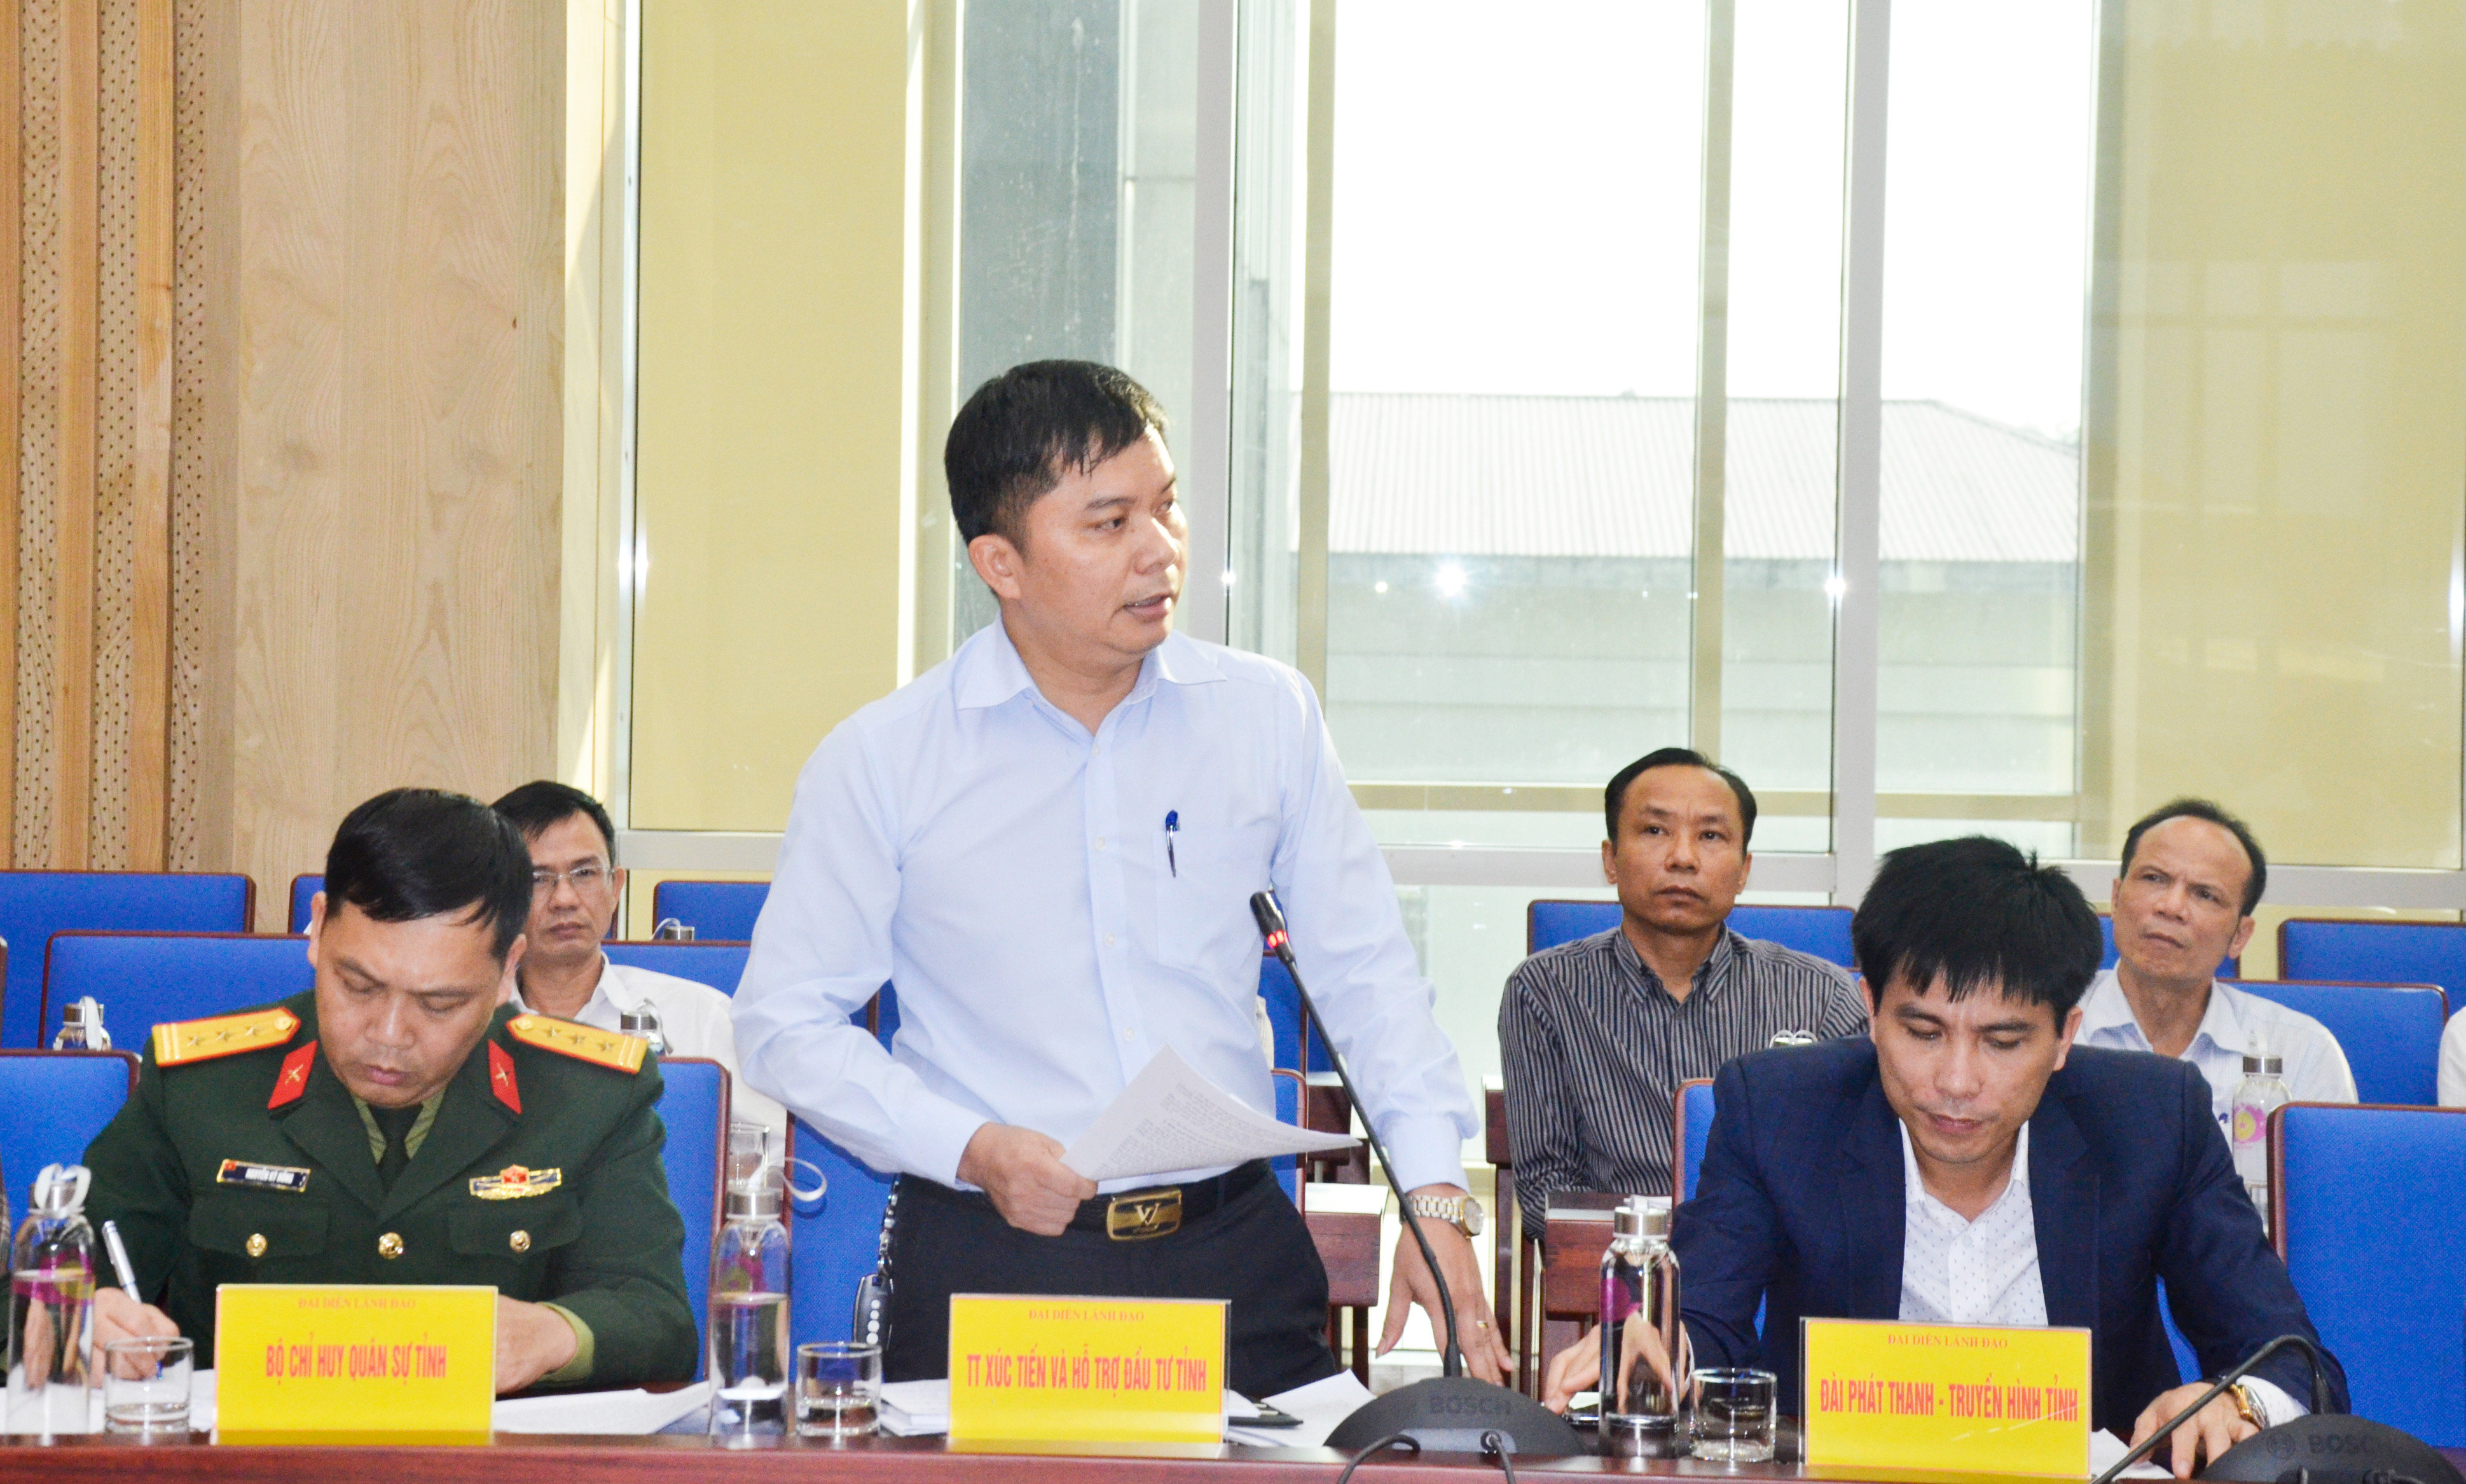 Ông Nguyễn Văn Nam - Phó Giám đốc Trung tâm xúc tiến hỗ trợ đầu tư tỉnh báo cáo dự kiến Hội nghị gặp mặt 